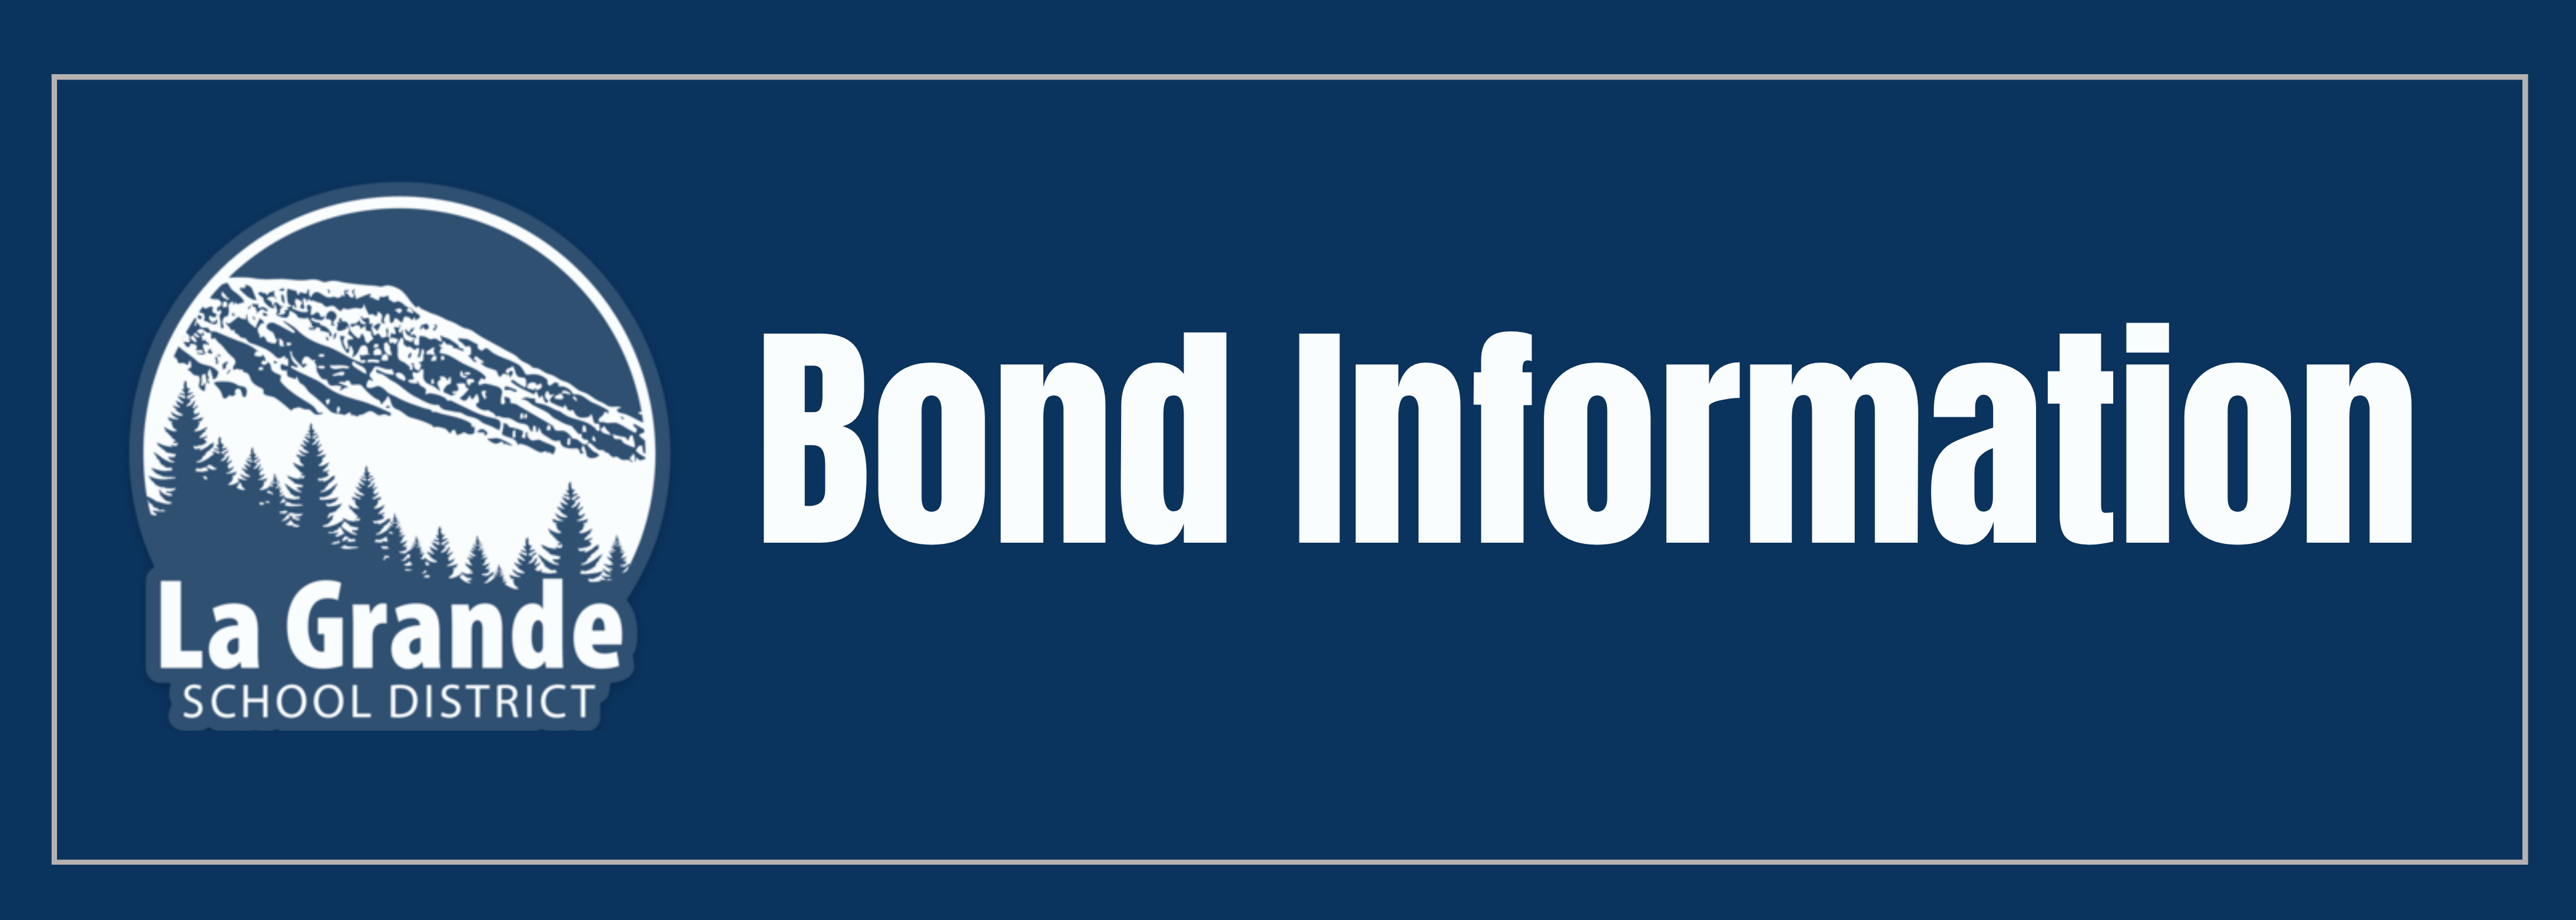 La Grande School District logo with Bond Information